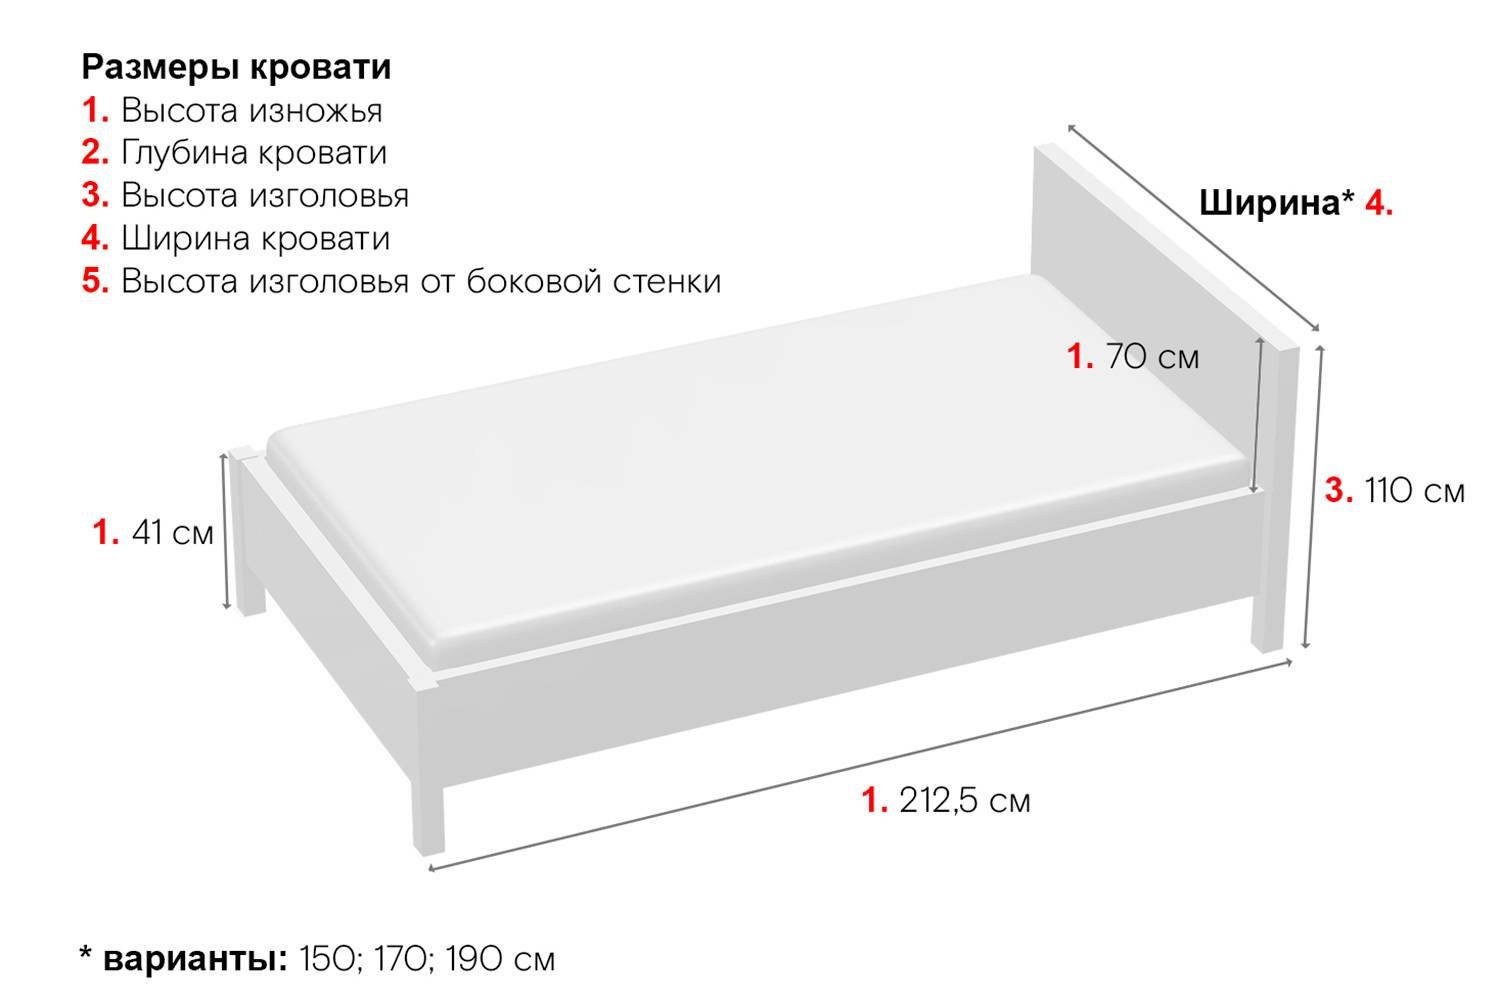 Варианты размеров кровати-полуторки: стандарт
варианты размеров кровати-полуторки: стандарт